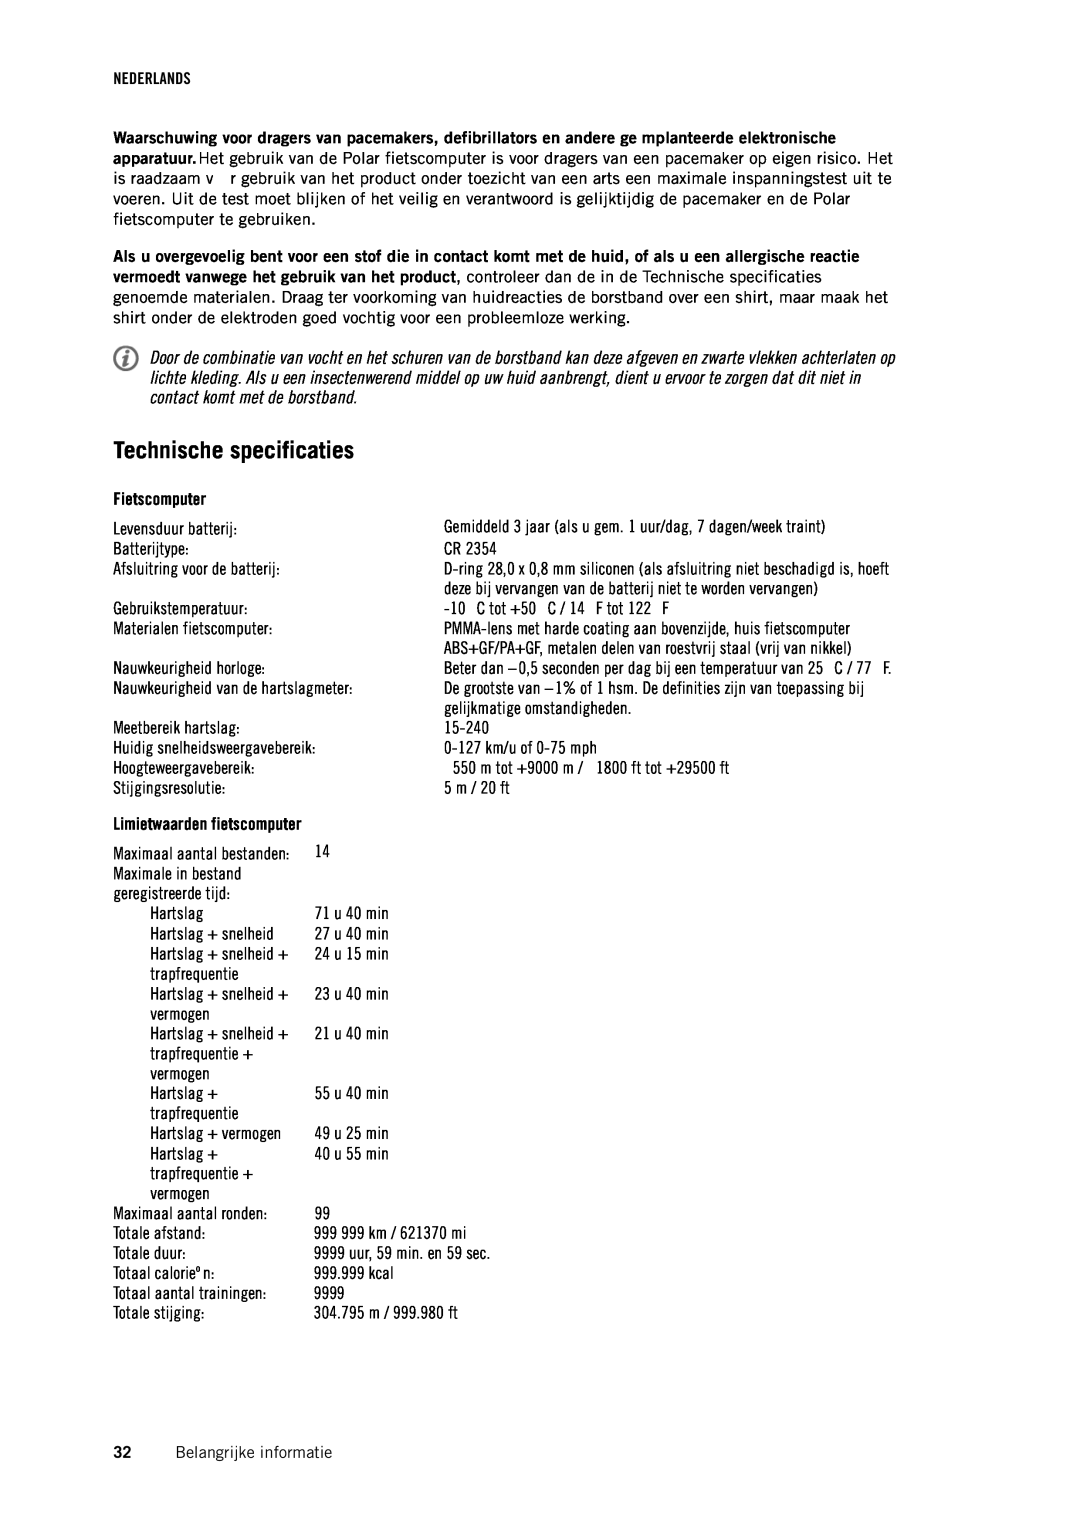 Polar CS500 manual Technische specificaties, Fietscomputer 